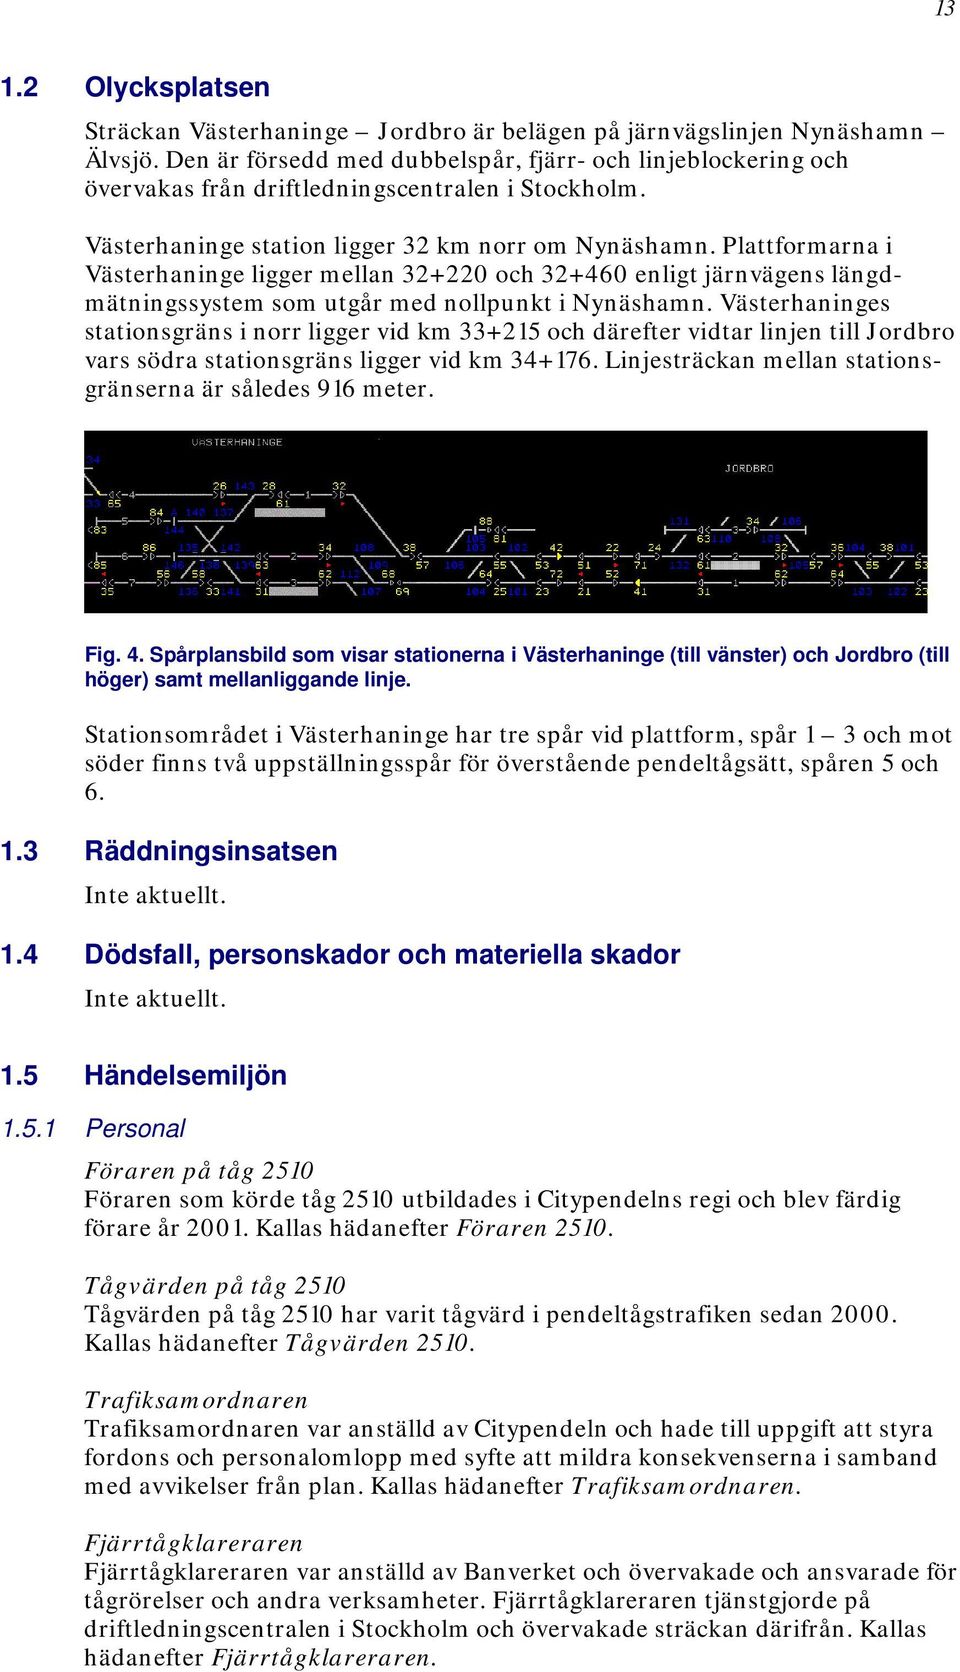 Plattformarna i Västerhaninge ligger mellan 32+220 och 32+460 enligt järnvägens längdmätningssystem som utgår med nollpunkt i Nynäshamn.